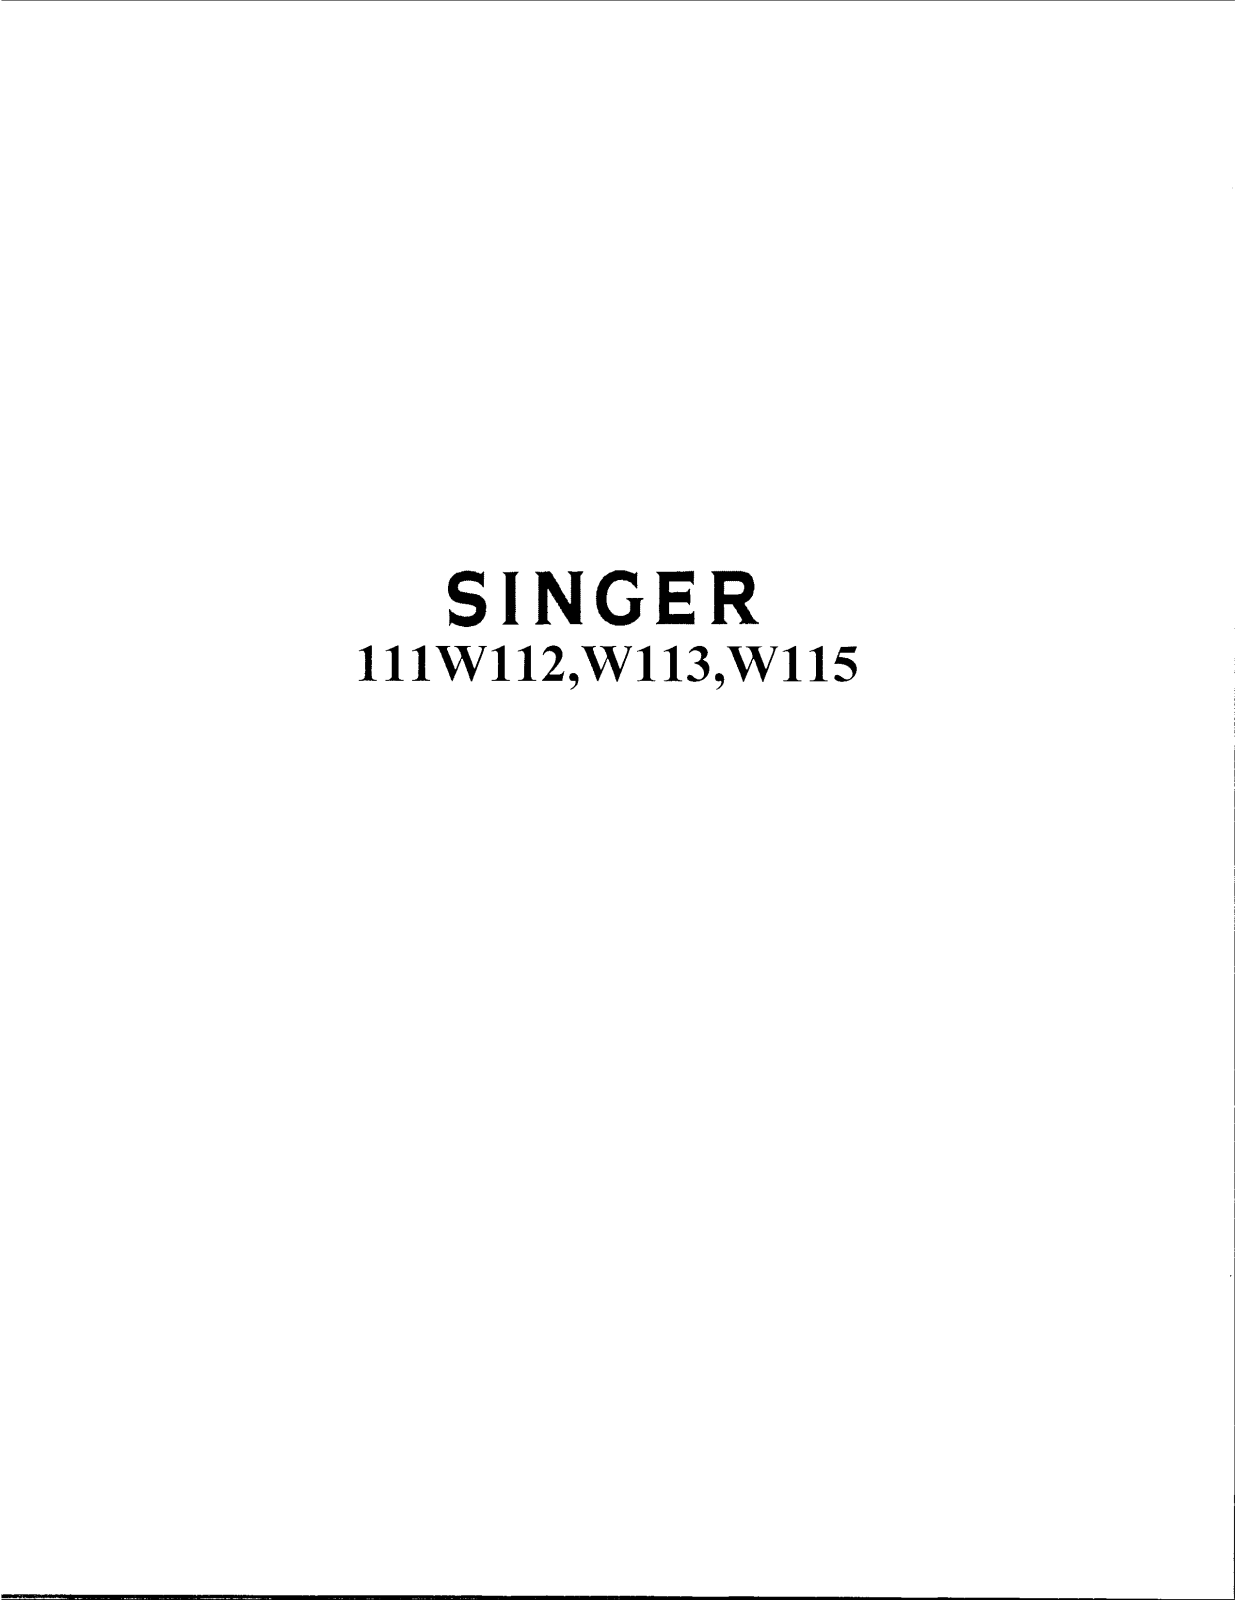 Singer 111W112, 111W113, 111W115 Instruction Manual